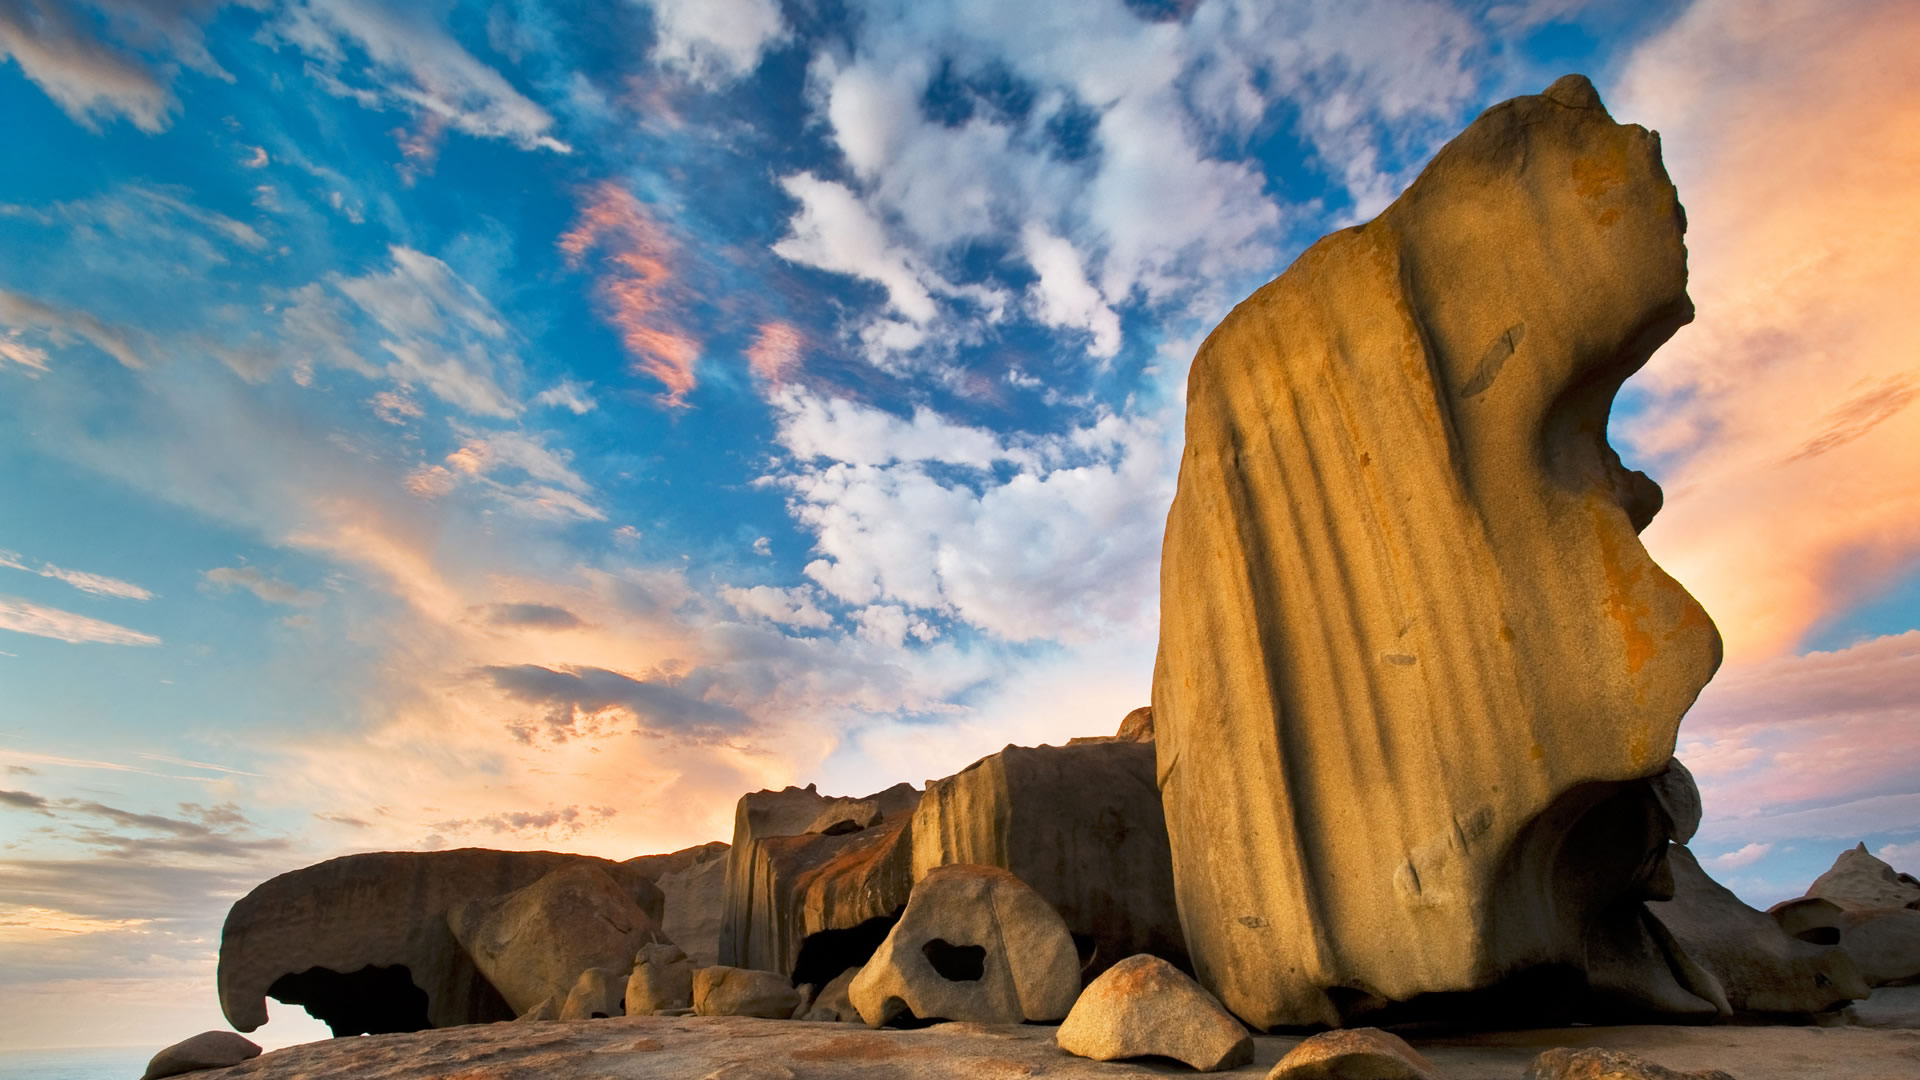 دانلود عکس زیبا و دلنشین از صخره ی بلند و آسمان چند رنگ